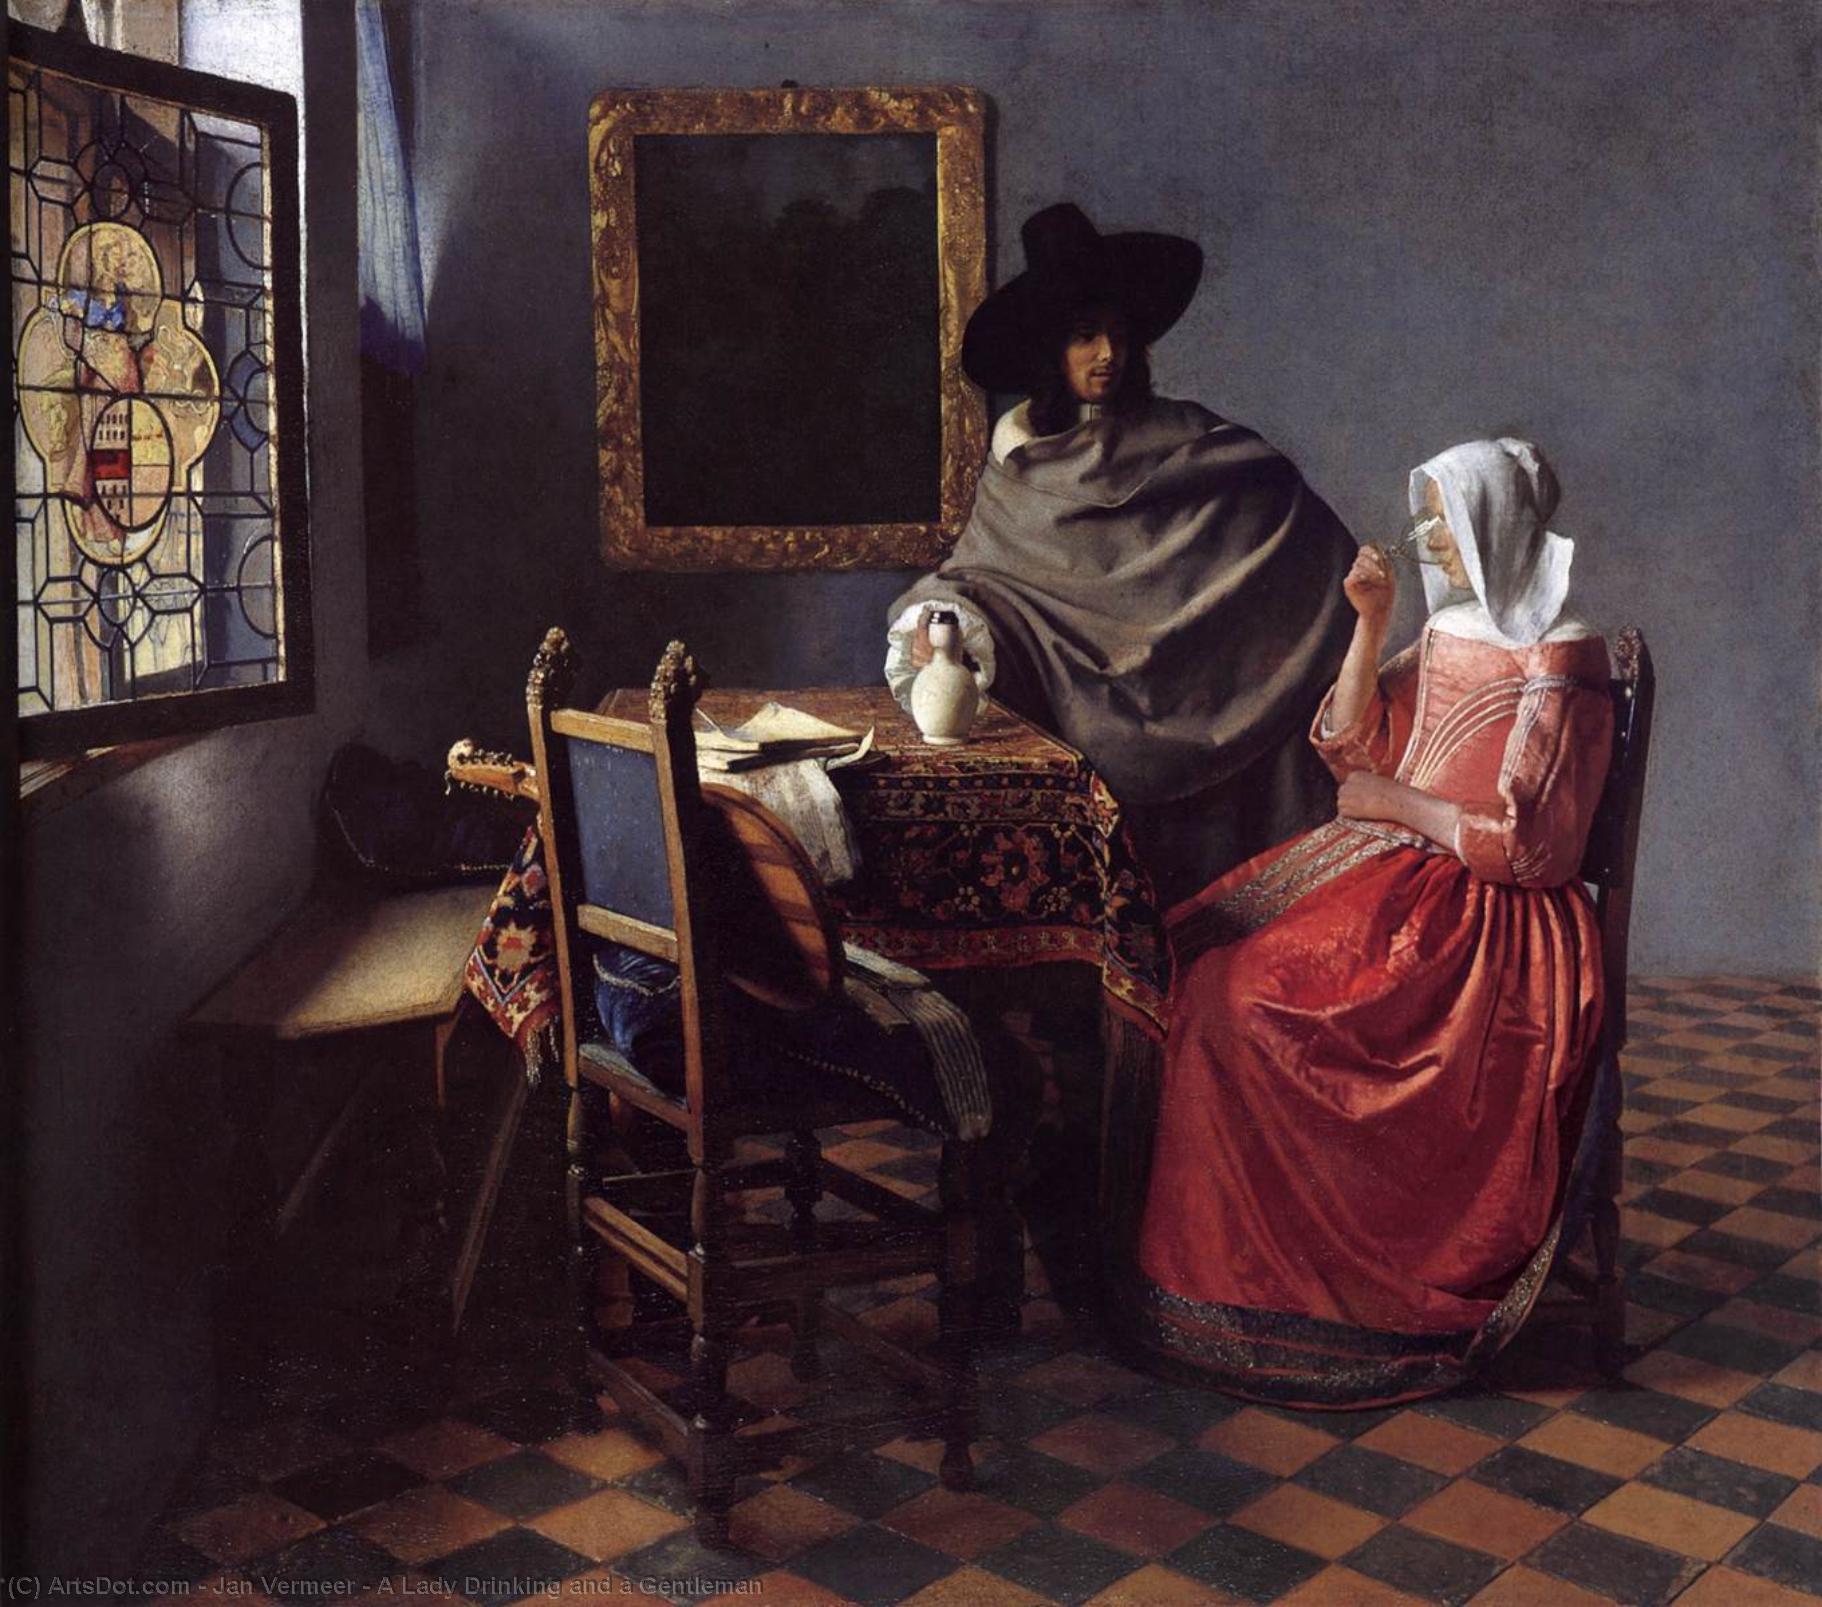 WikiOO.org - Энциклопедия изобразительного искусства - Живопись, Картины  Jan Vermeer - леди питьевой  Причем     Джентльмен